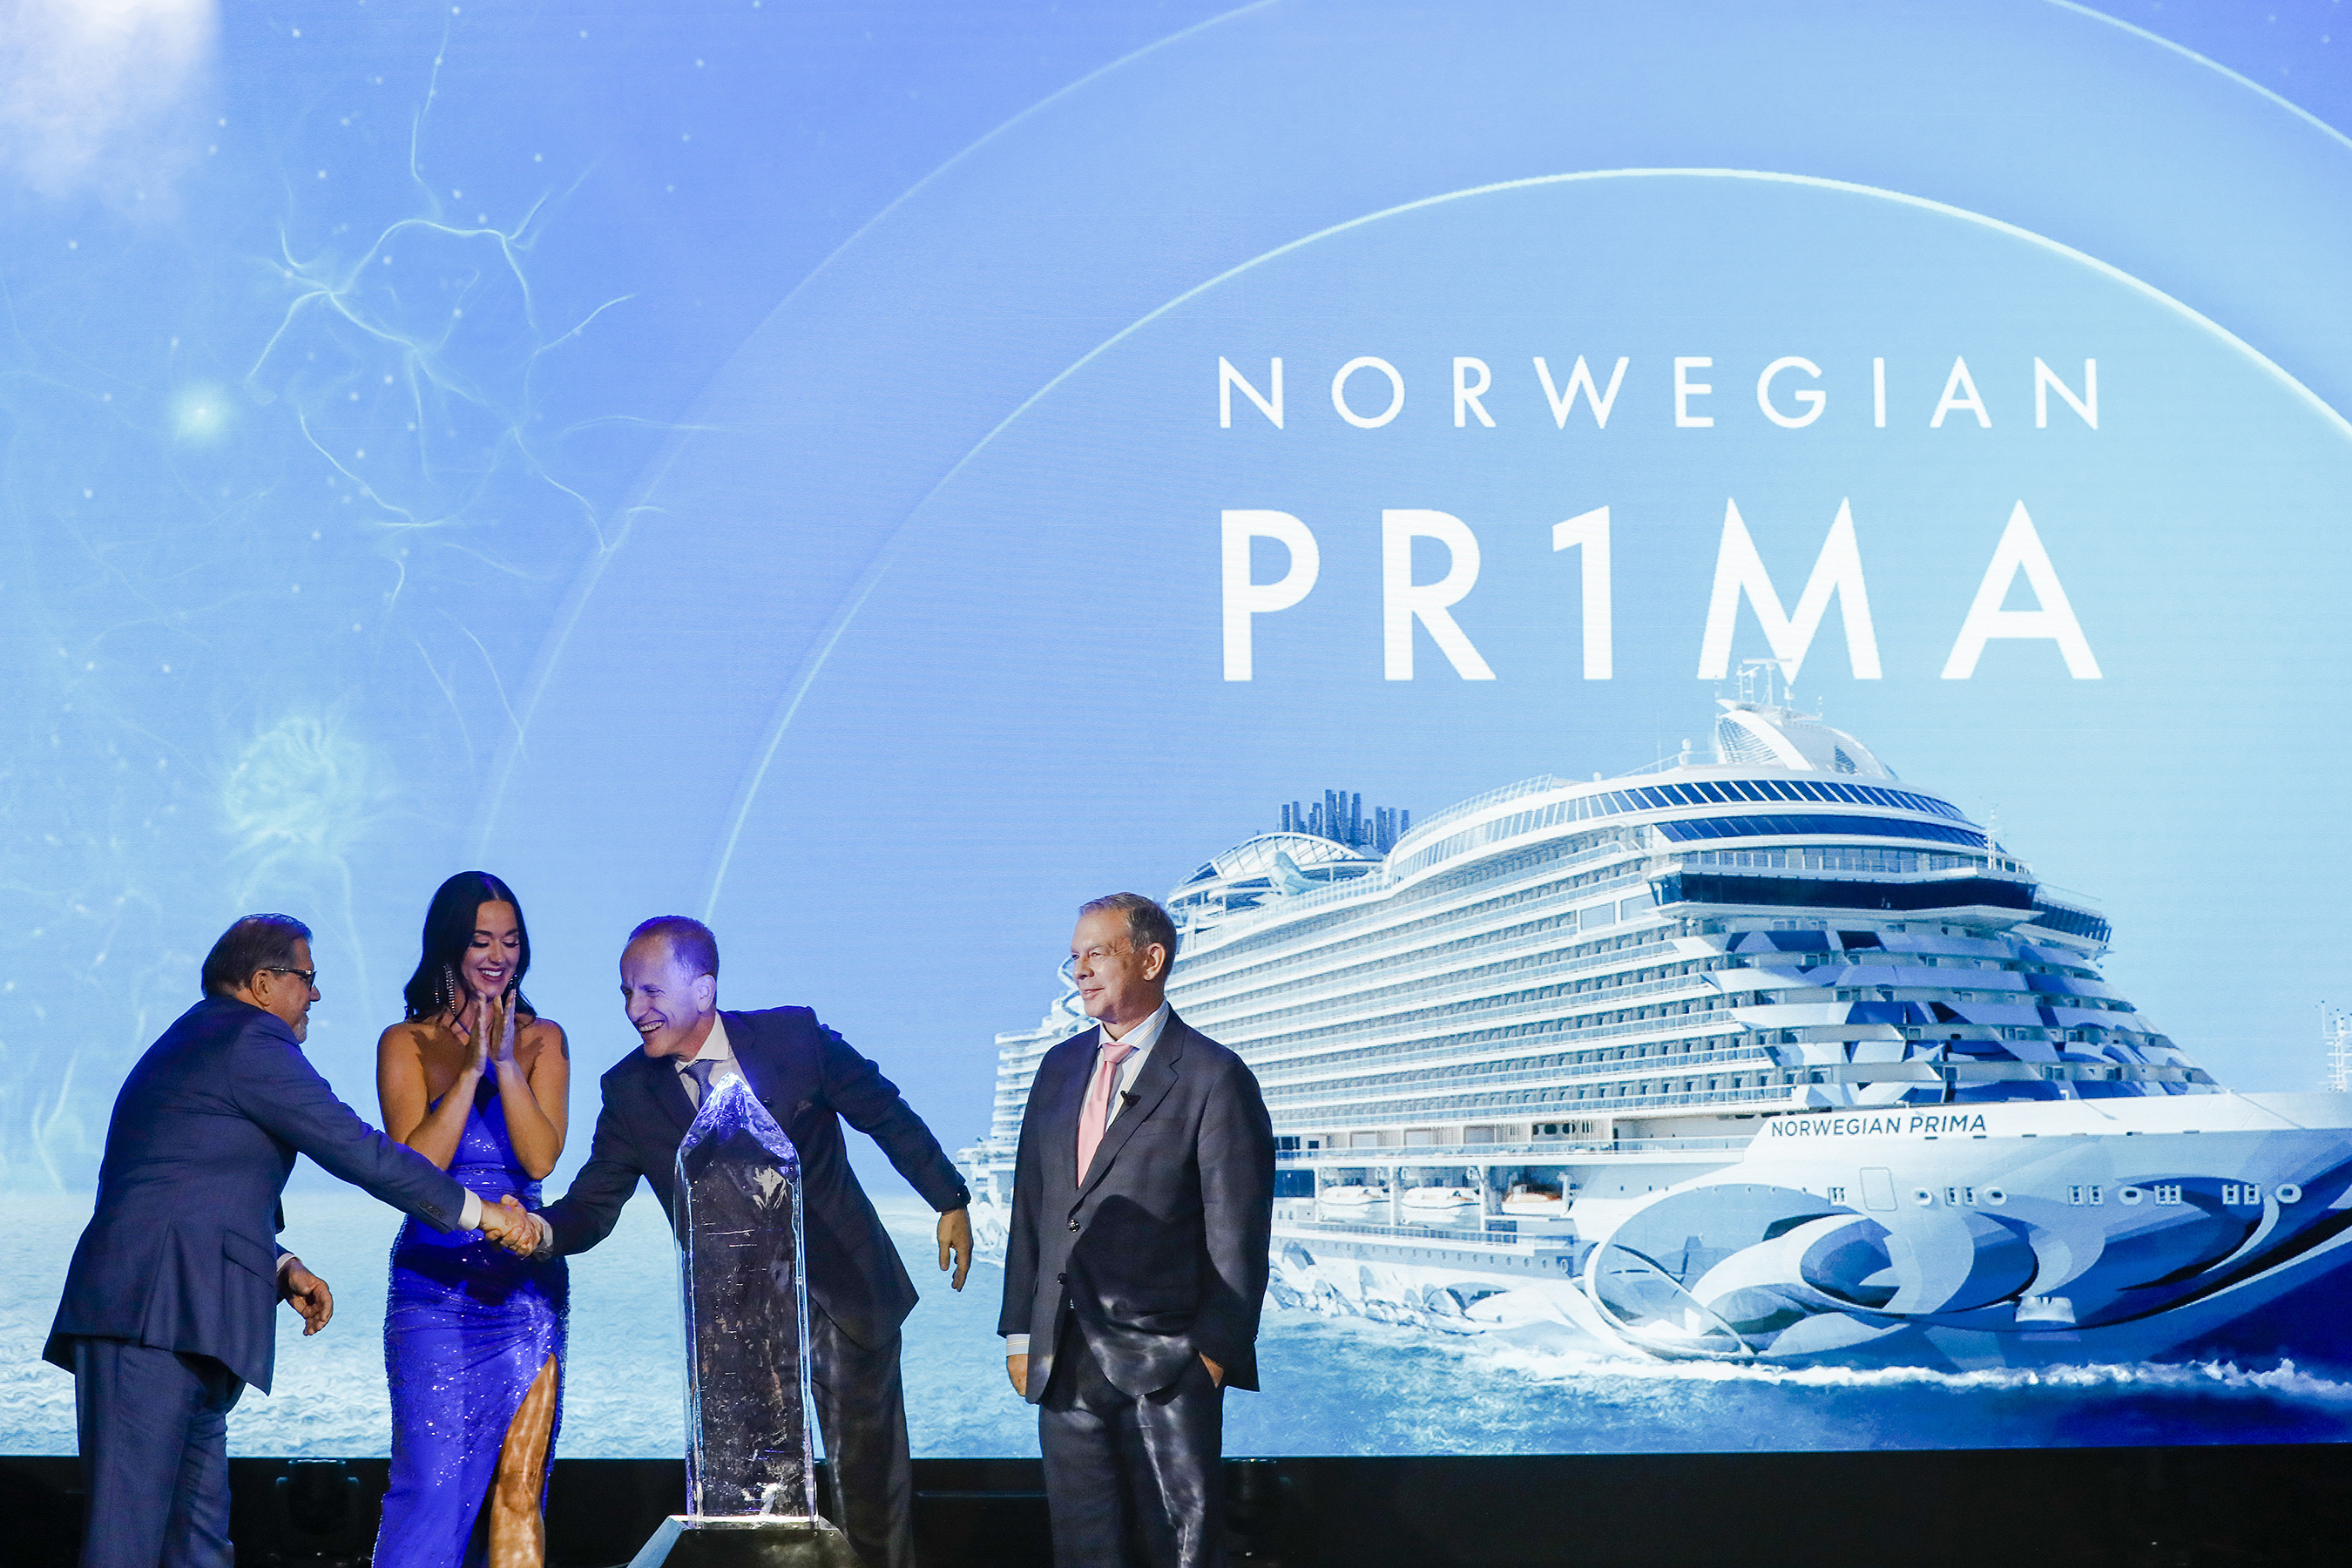 La star internazionale e madrina della Norwegian Prima, Katy Perry, si unisce ai dirigenti della Norwegian Cruise Line a Reykjavik, in Islanda, per battezzare e nominare la 18a nave di NCL nella classe ammiraglia Prima.